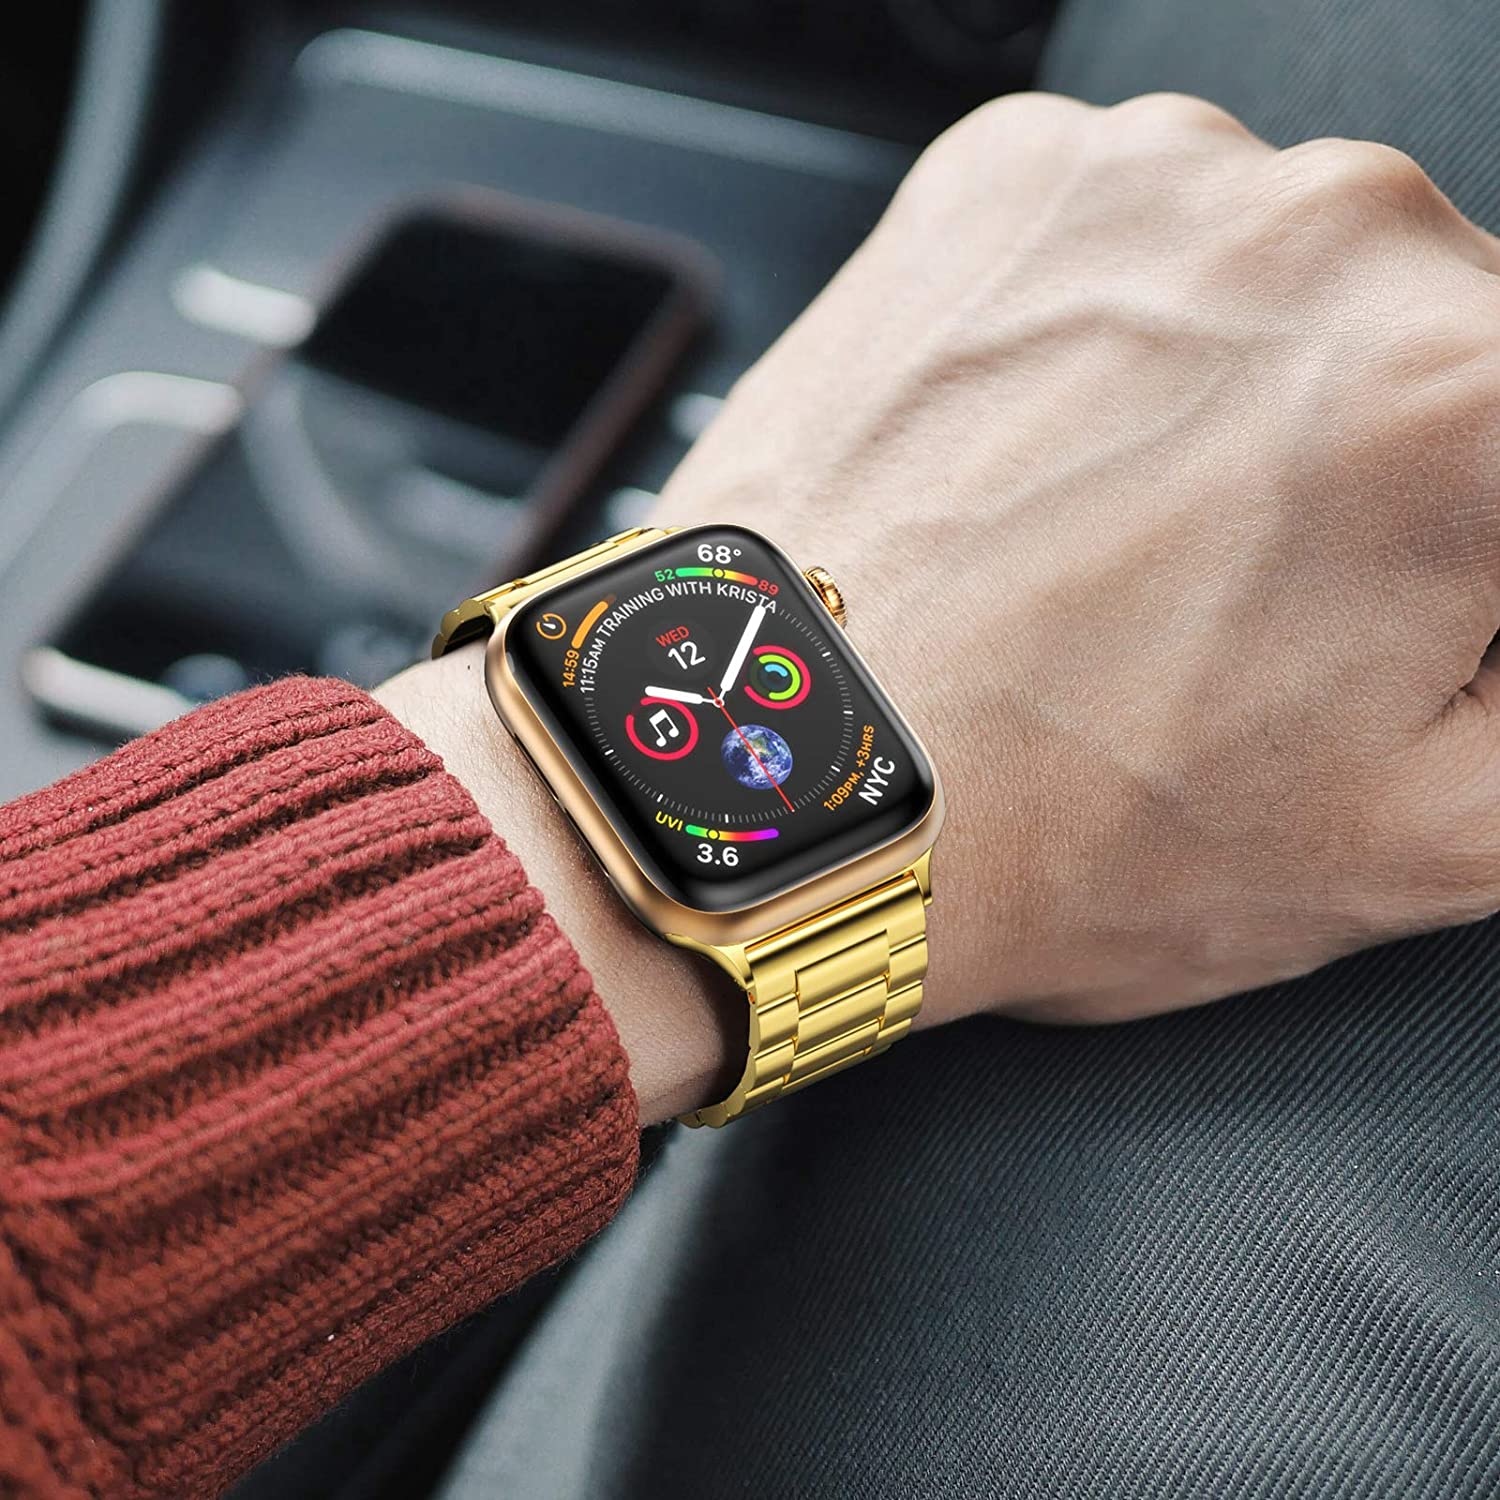  Apple Watch gyöngyök Acél link szalag - arany